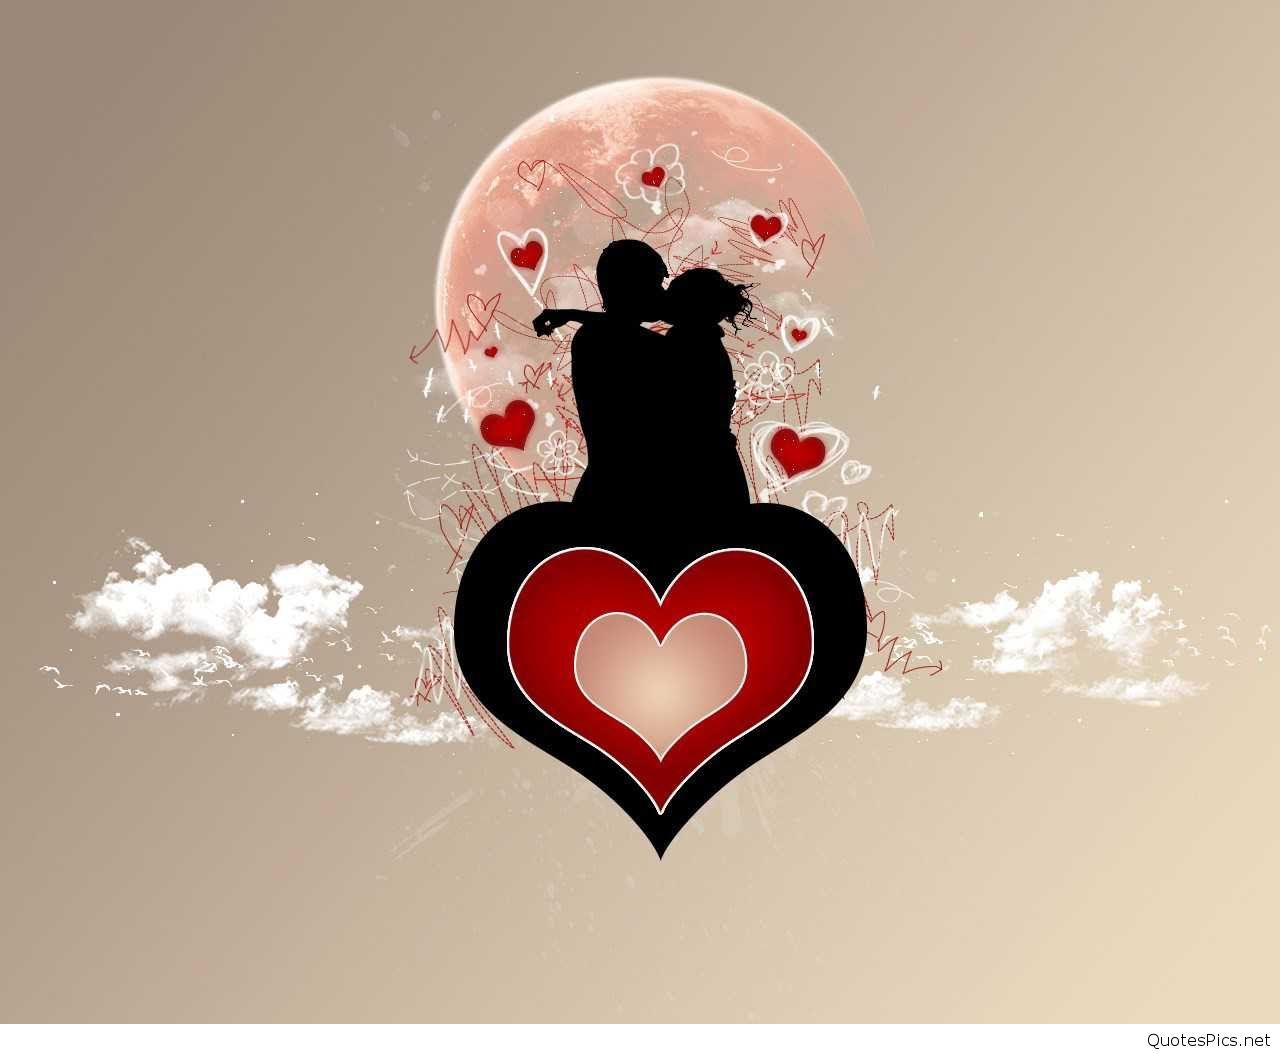 アンドロイドのための愛の壁紙,心臓,愛,図,心臓,バレンタイン・デー